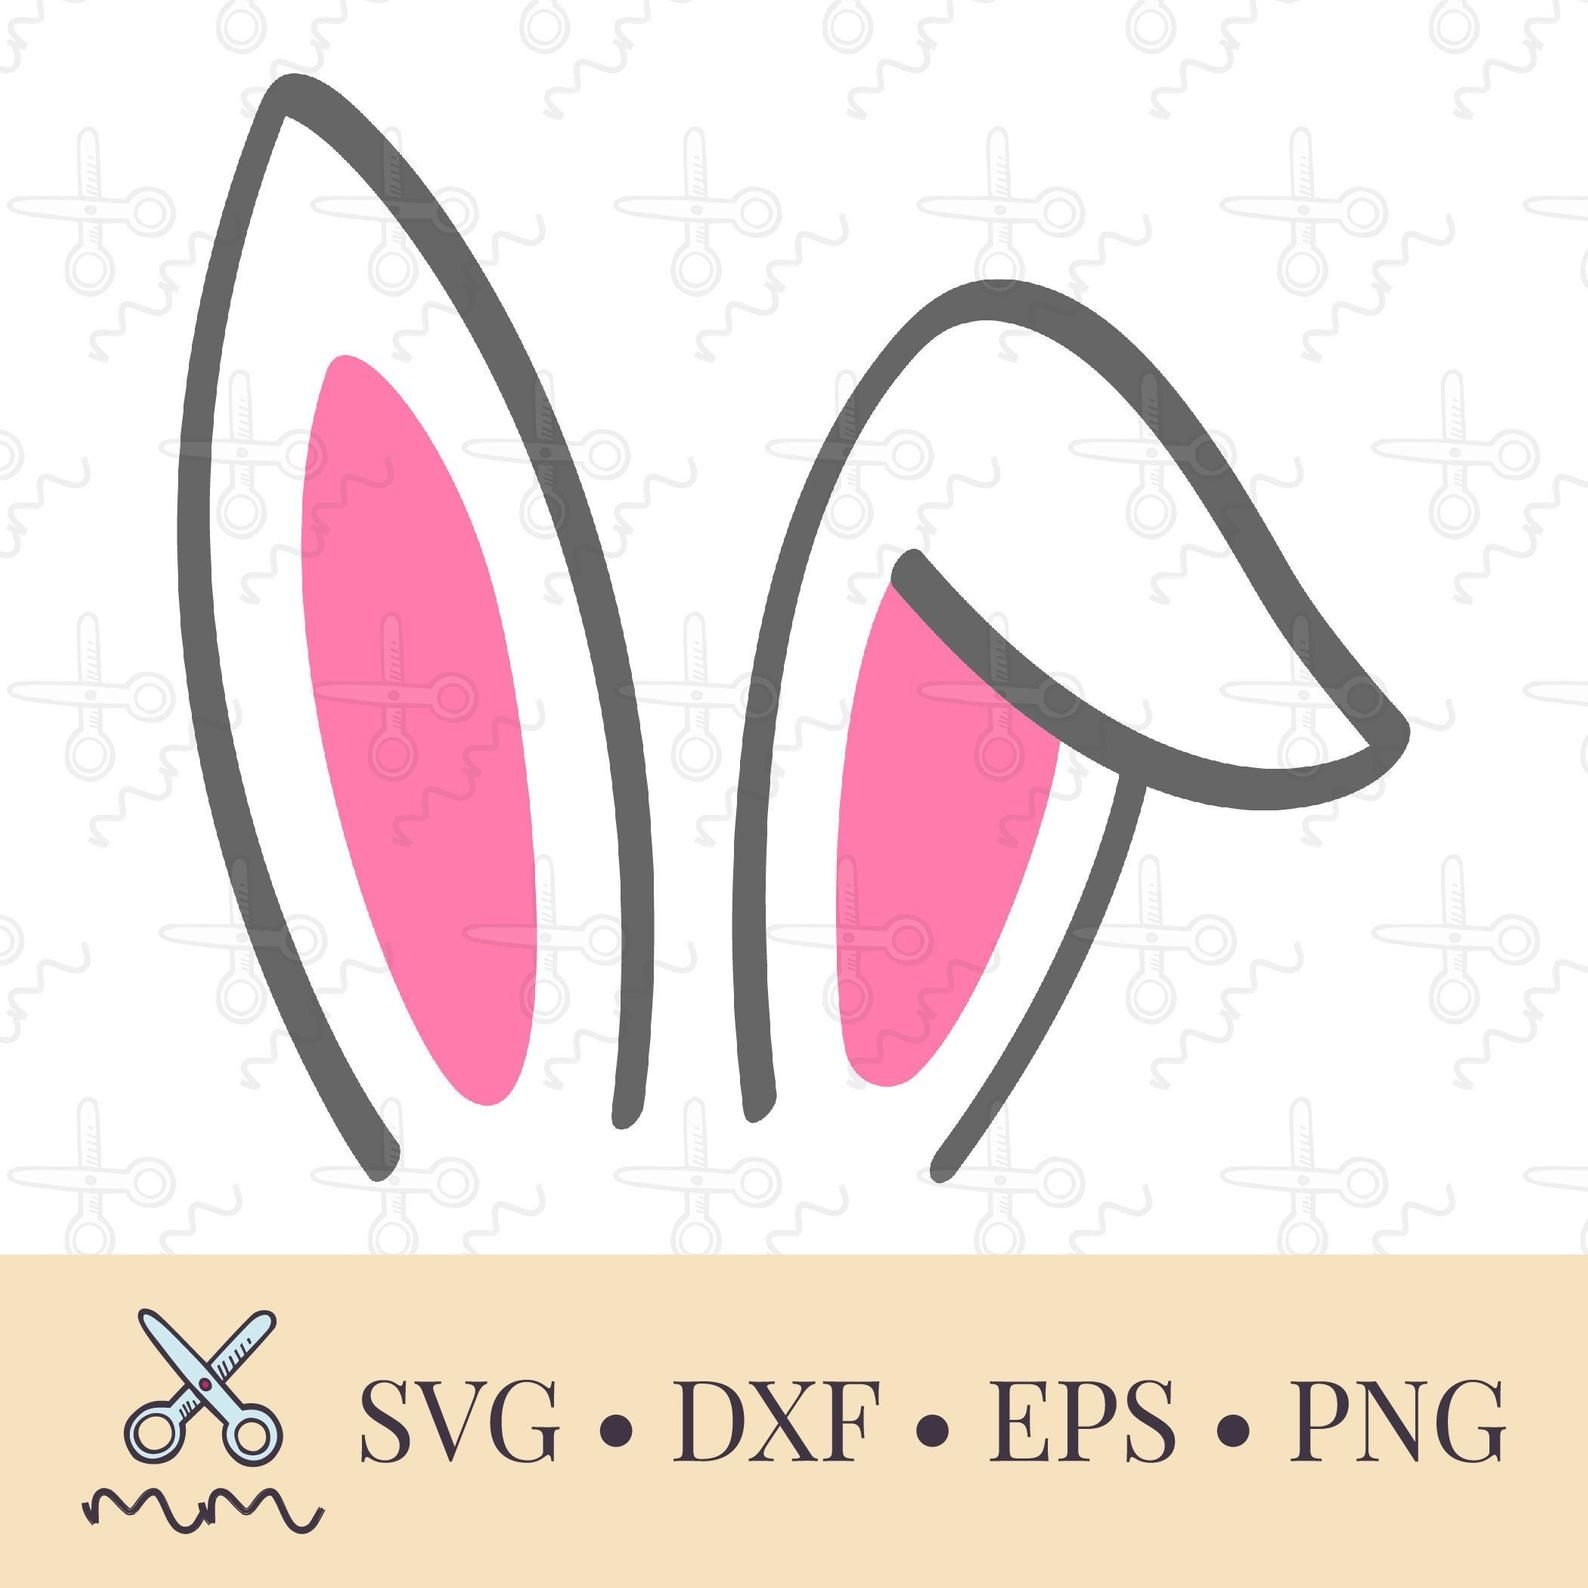 Как сделать уши зайца на ободке? | Уши, Поделки, Вязаные крючком аксессуары